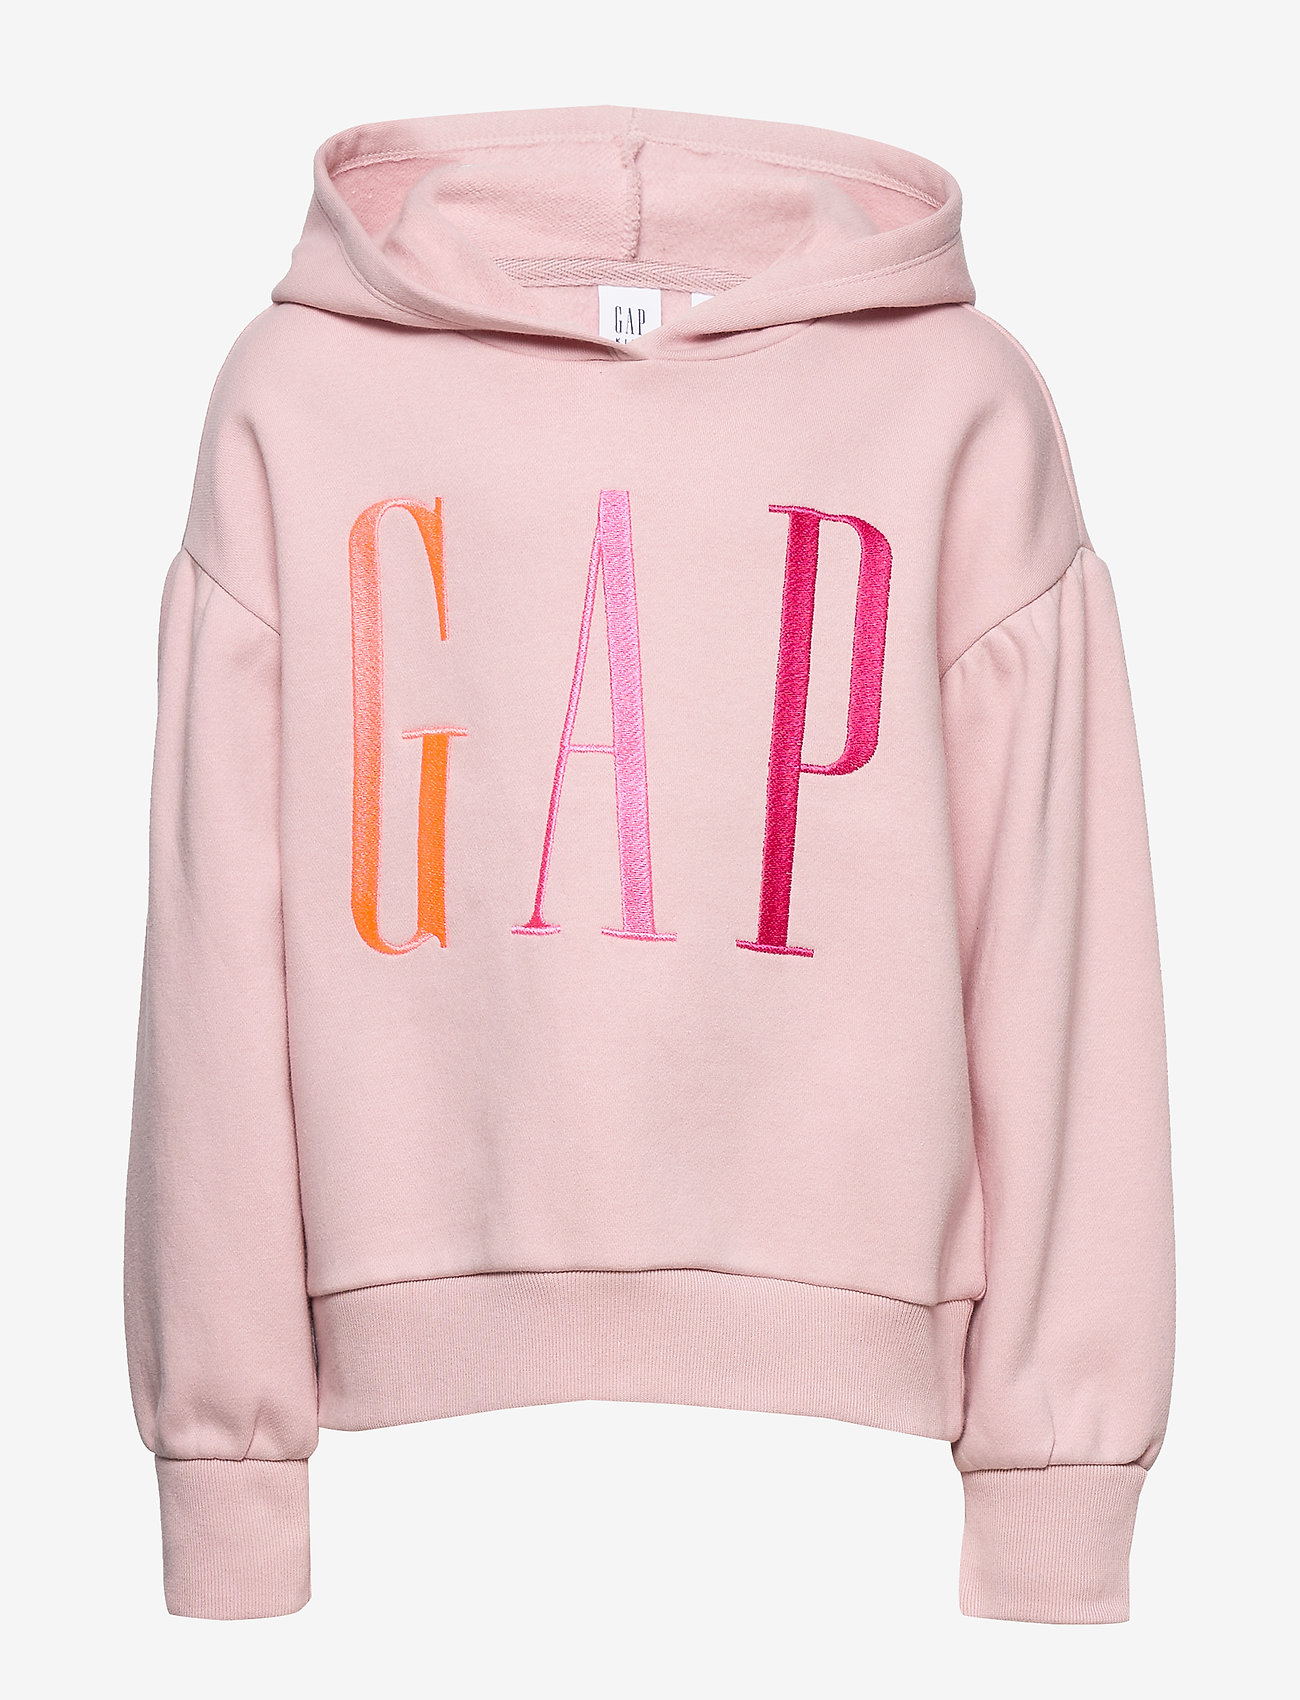 gap hoodies kids